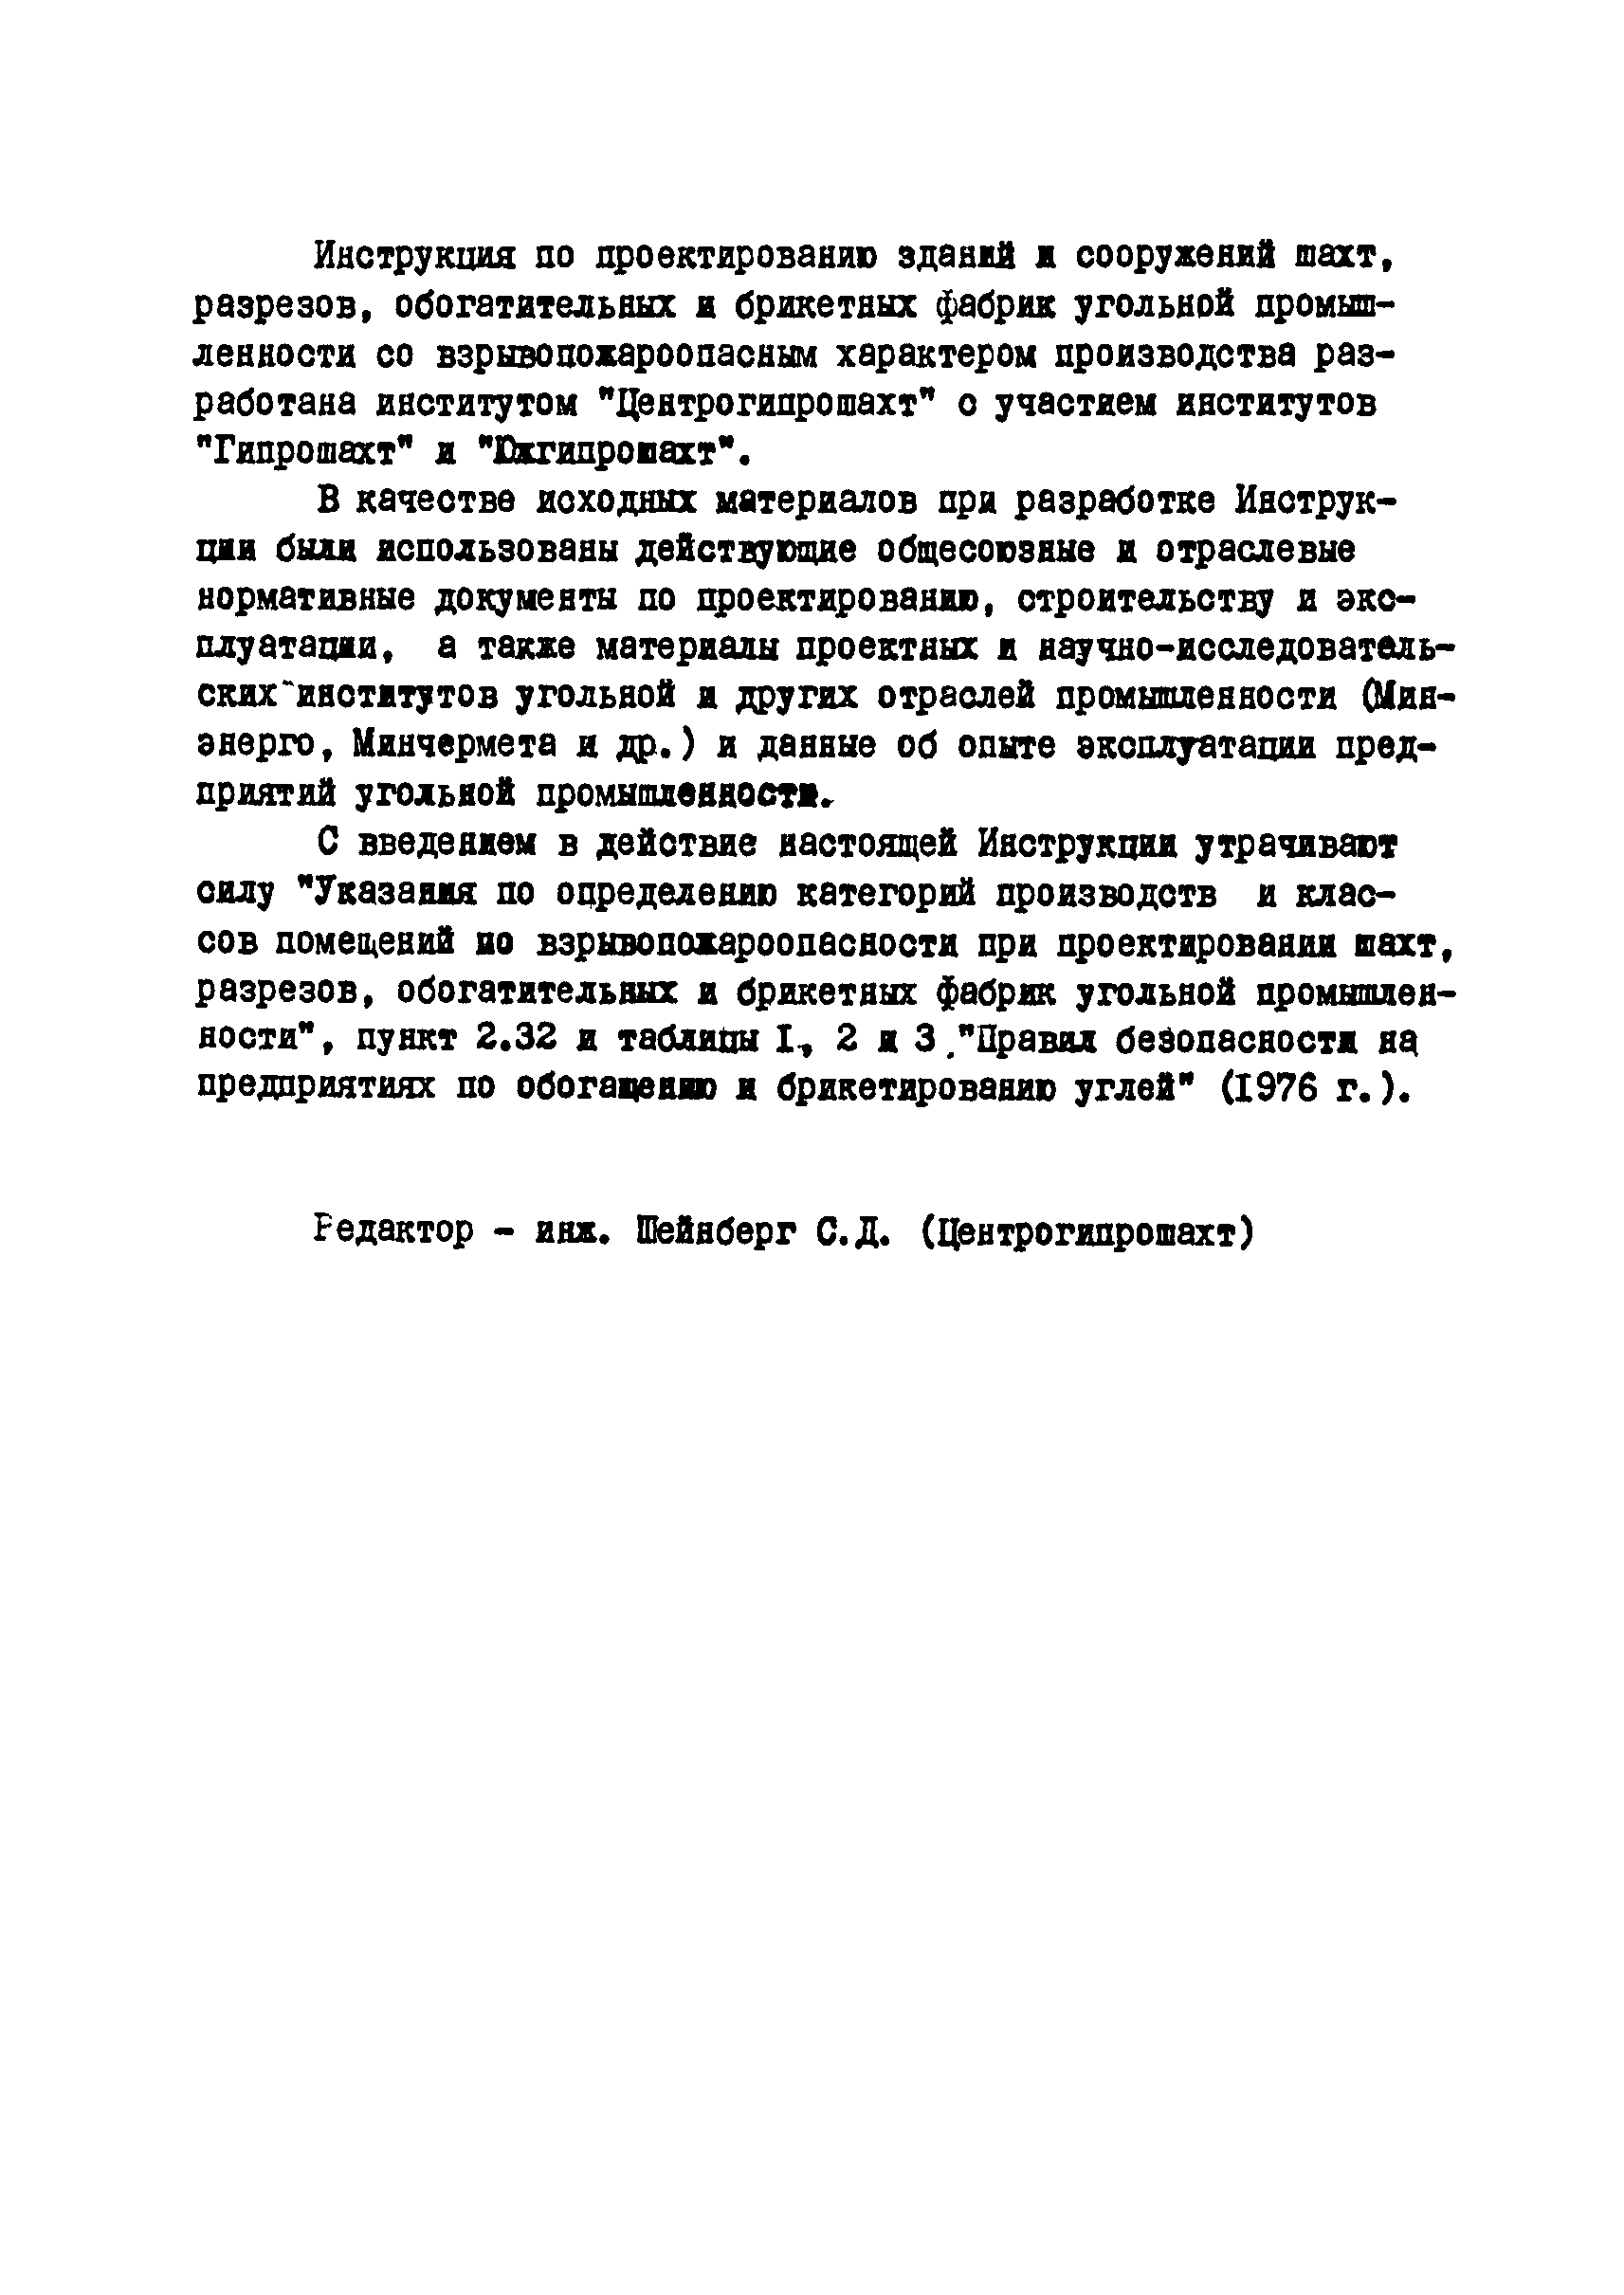 ВНТП 26-82